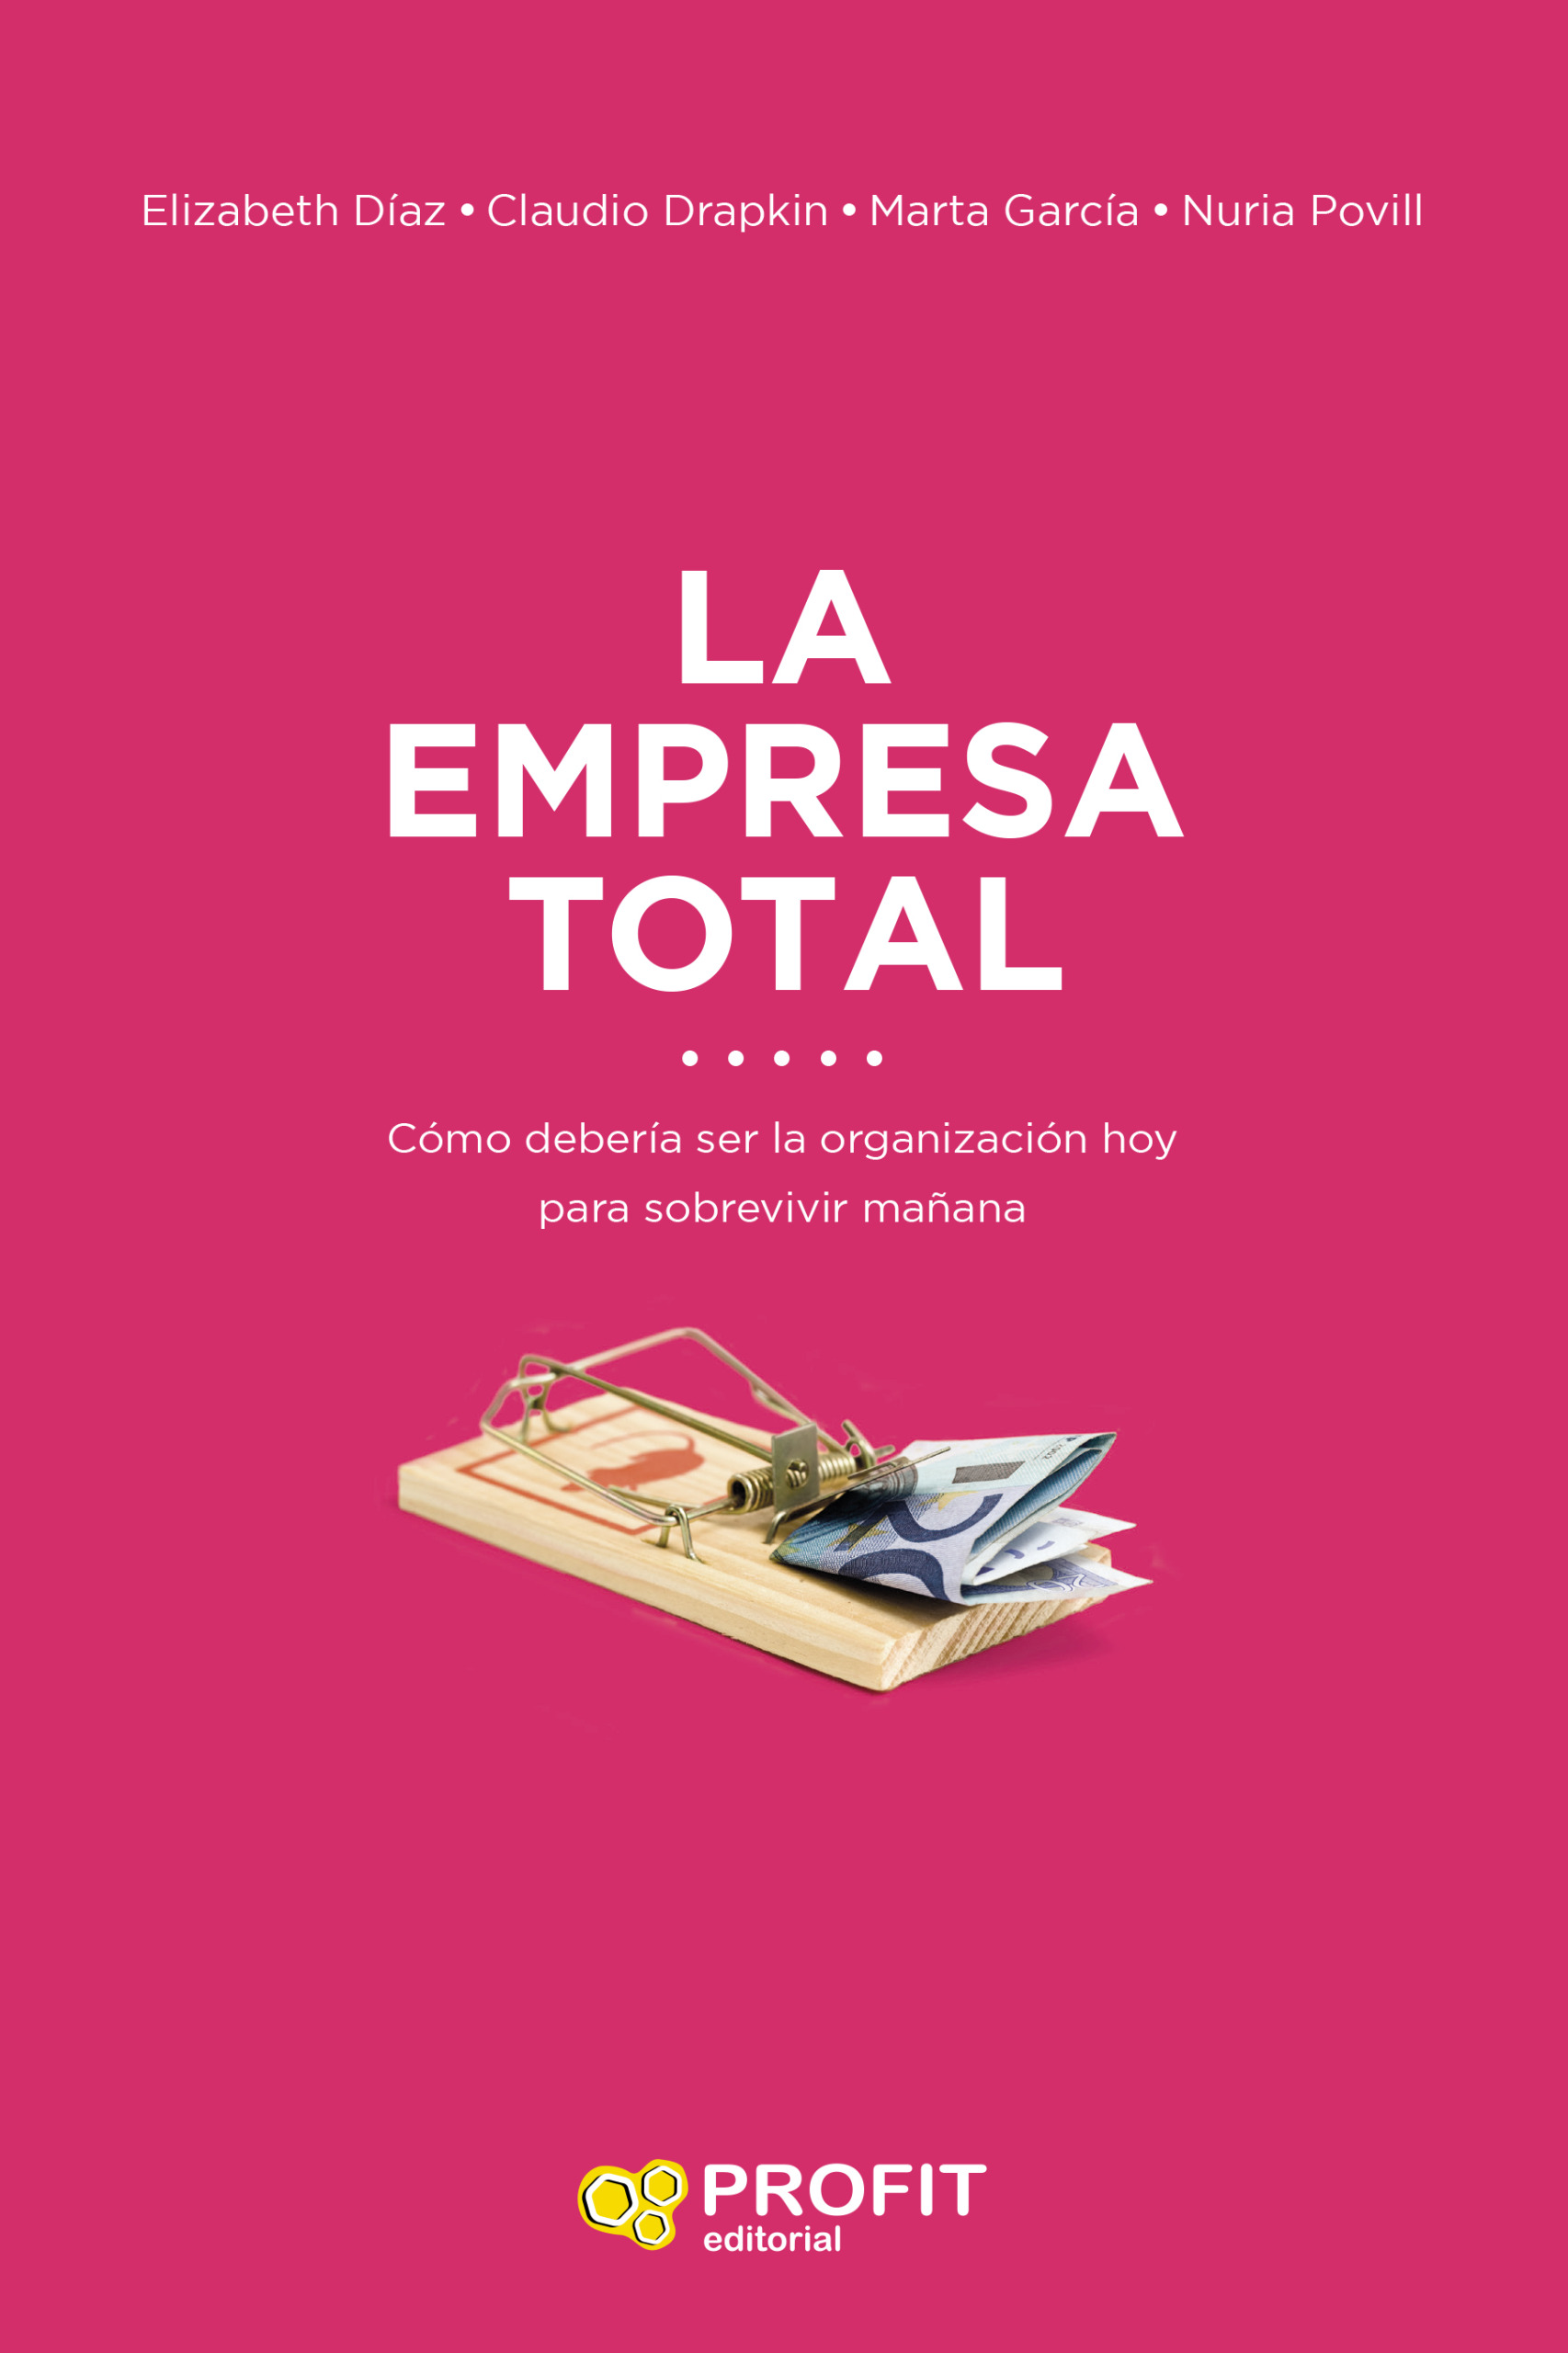 La empresa total | Marta García, Claudio Drapkin, Elizabeth Díaz y Nuria Povill